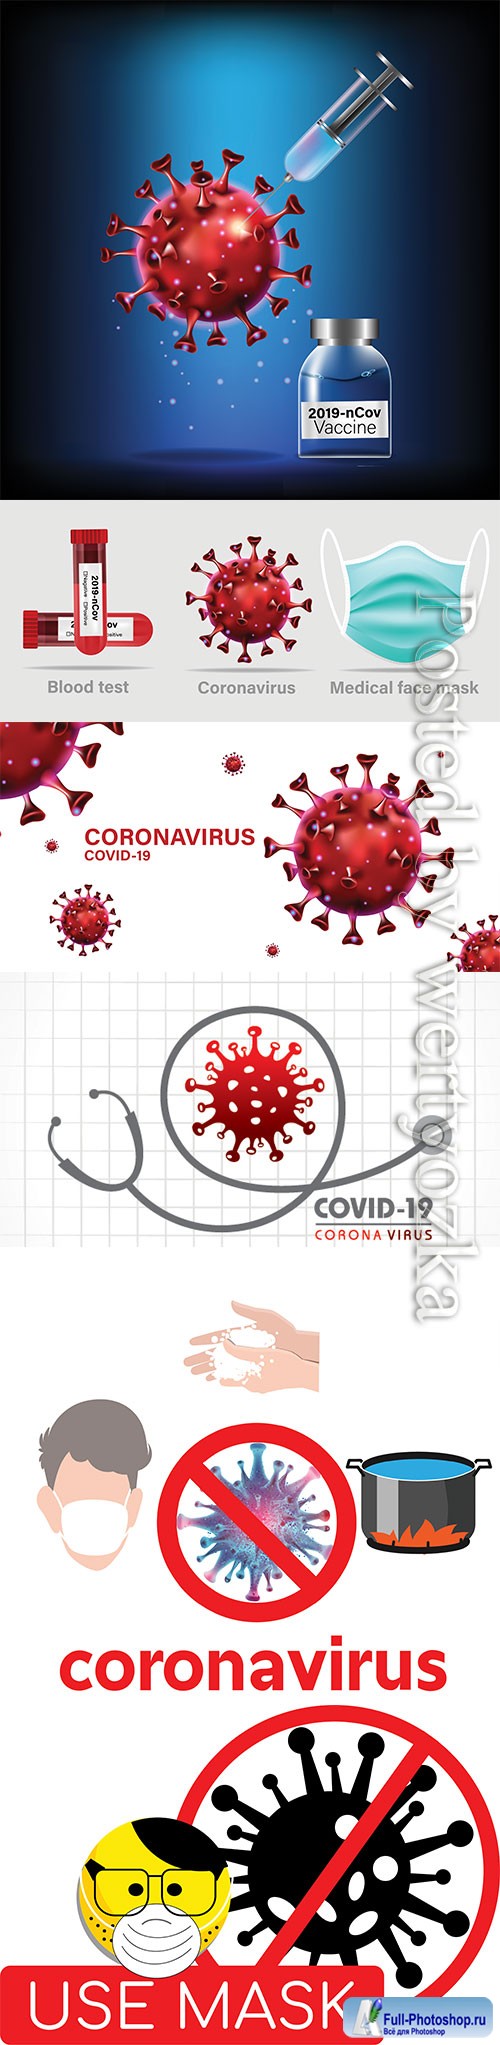 Concept for Covid-19 Corona virus